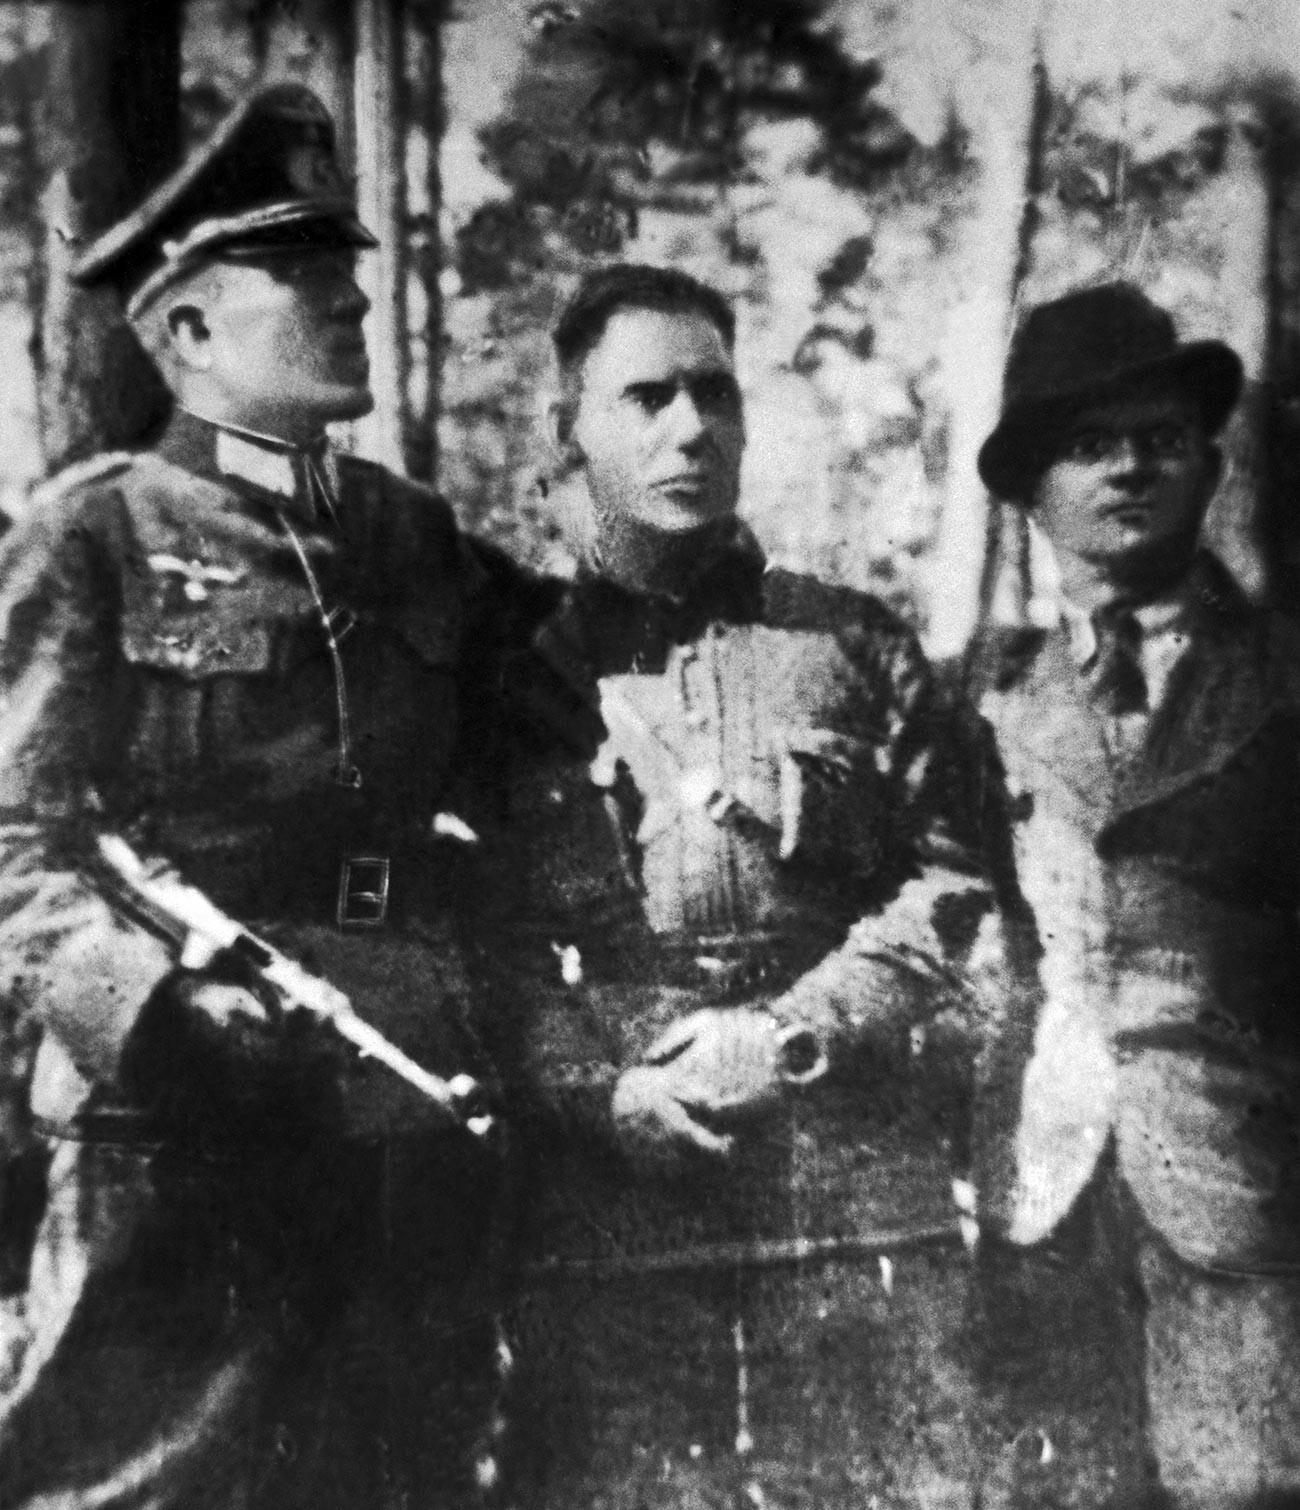 Nikolai Kuznetsov berseragam perwira Jerman (kiri) dengan komisaris dari detasemen partisan Stekhov dan Gnidyuk.
